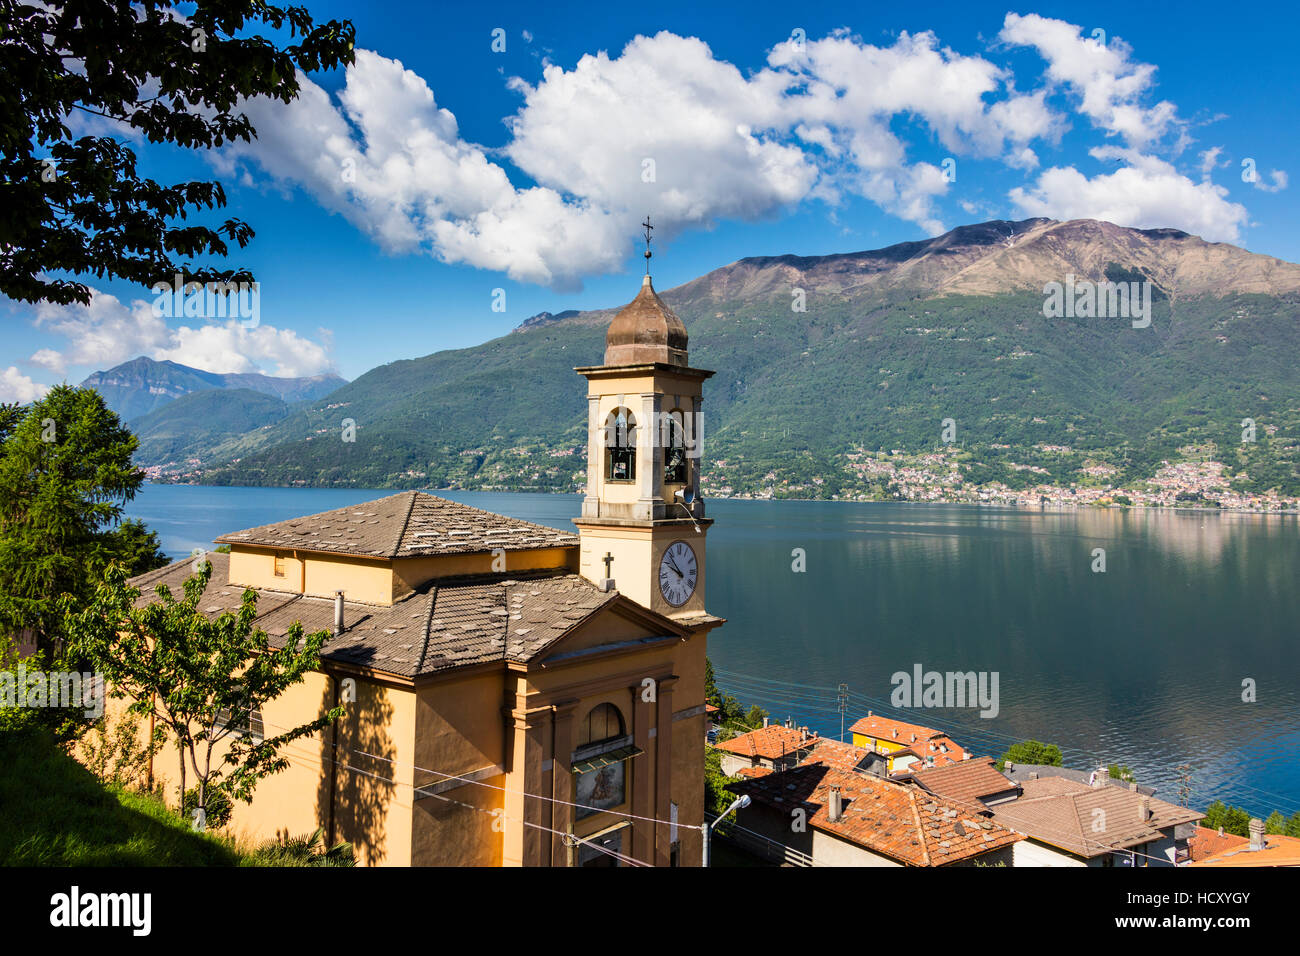 Vista della torre campanaria e il villaggio di Dorio, lago di Como, in provincia di Lecco, laghi italiani, Lombardia, Italia Foto Stock